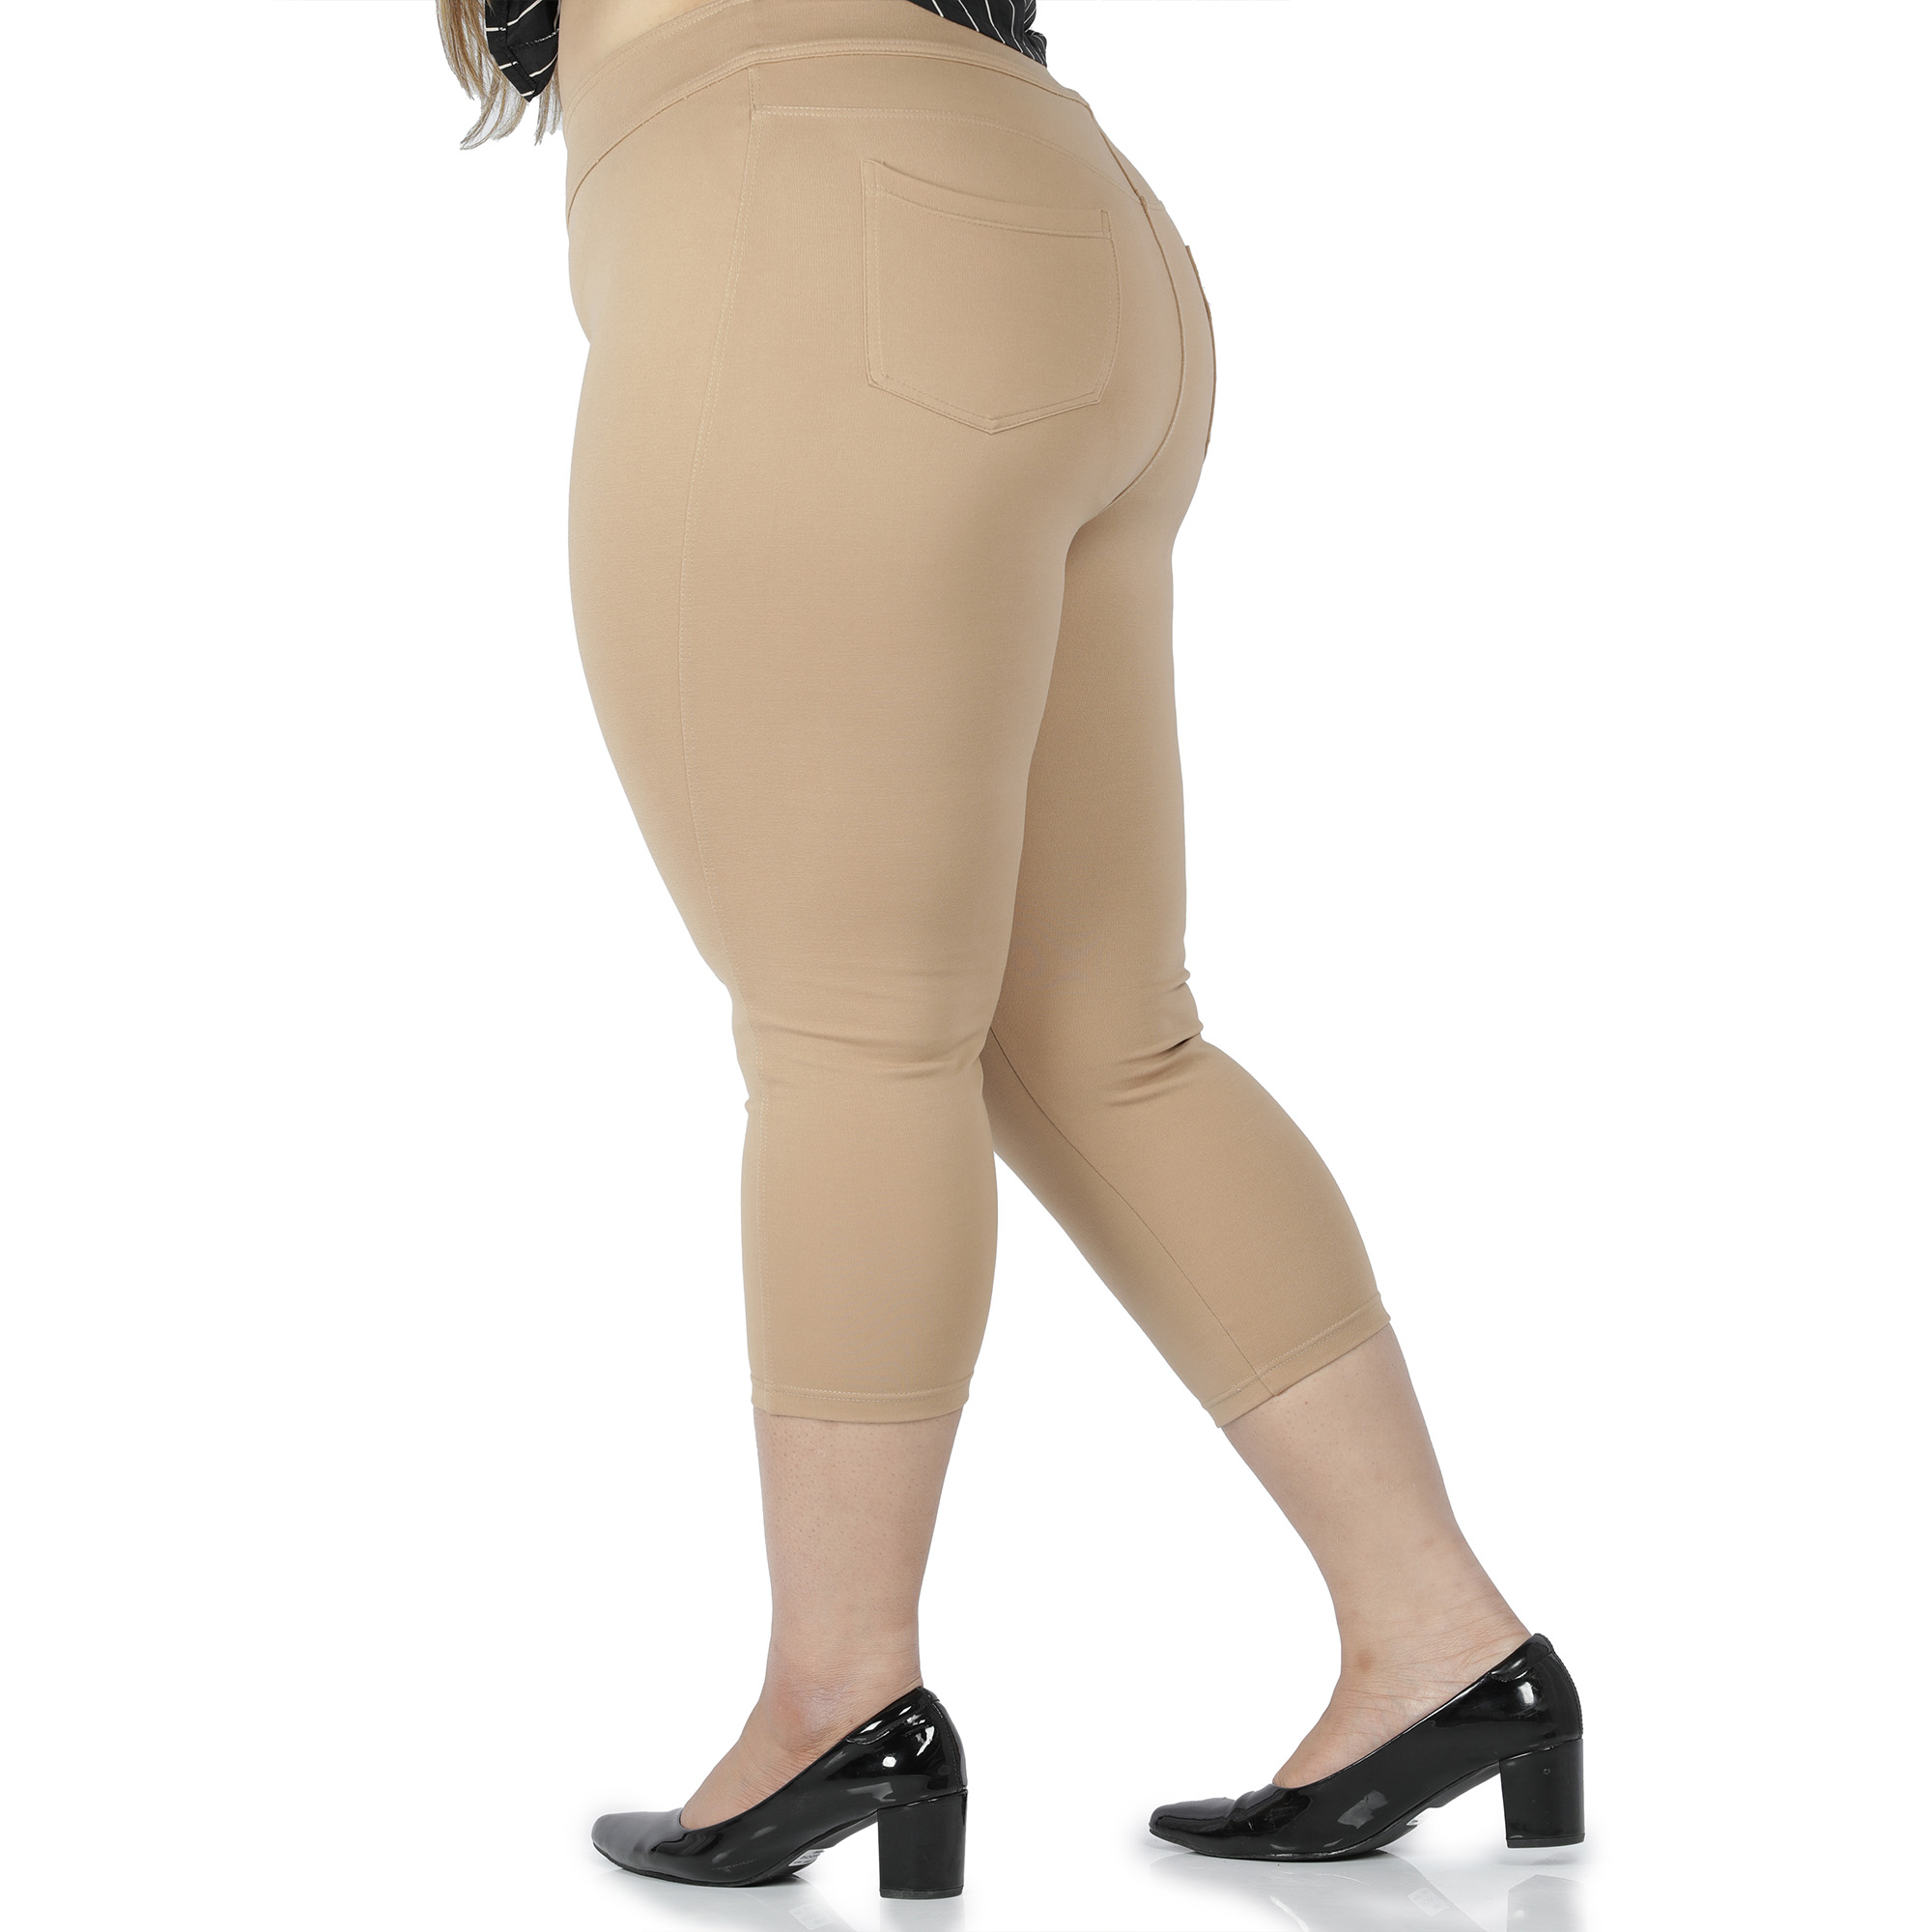 Khaki capris women gym wear High waist 2 back pockets - Belore Slims